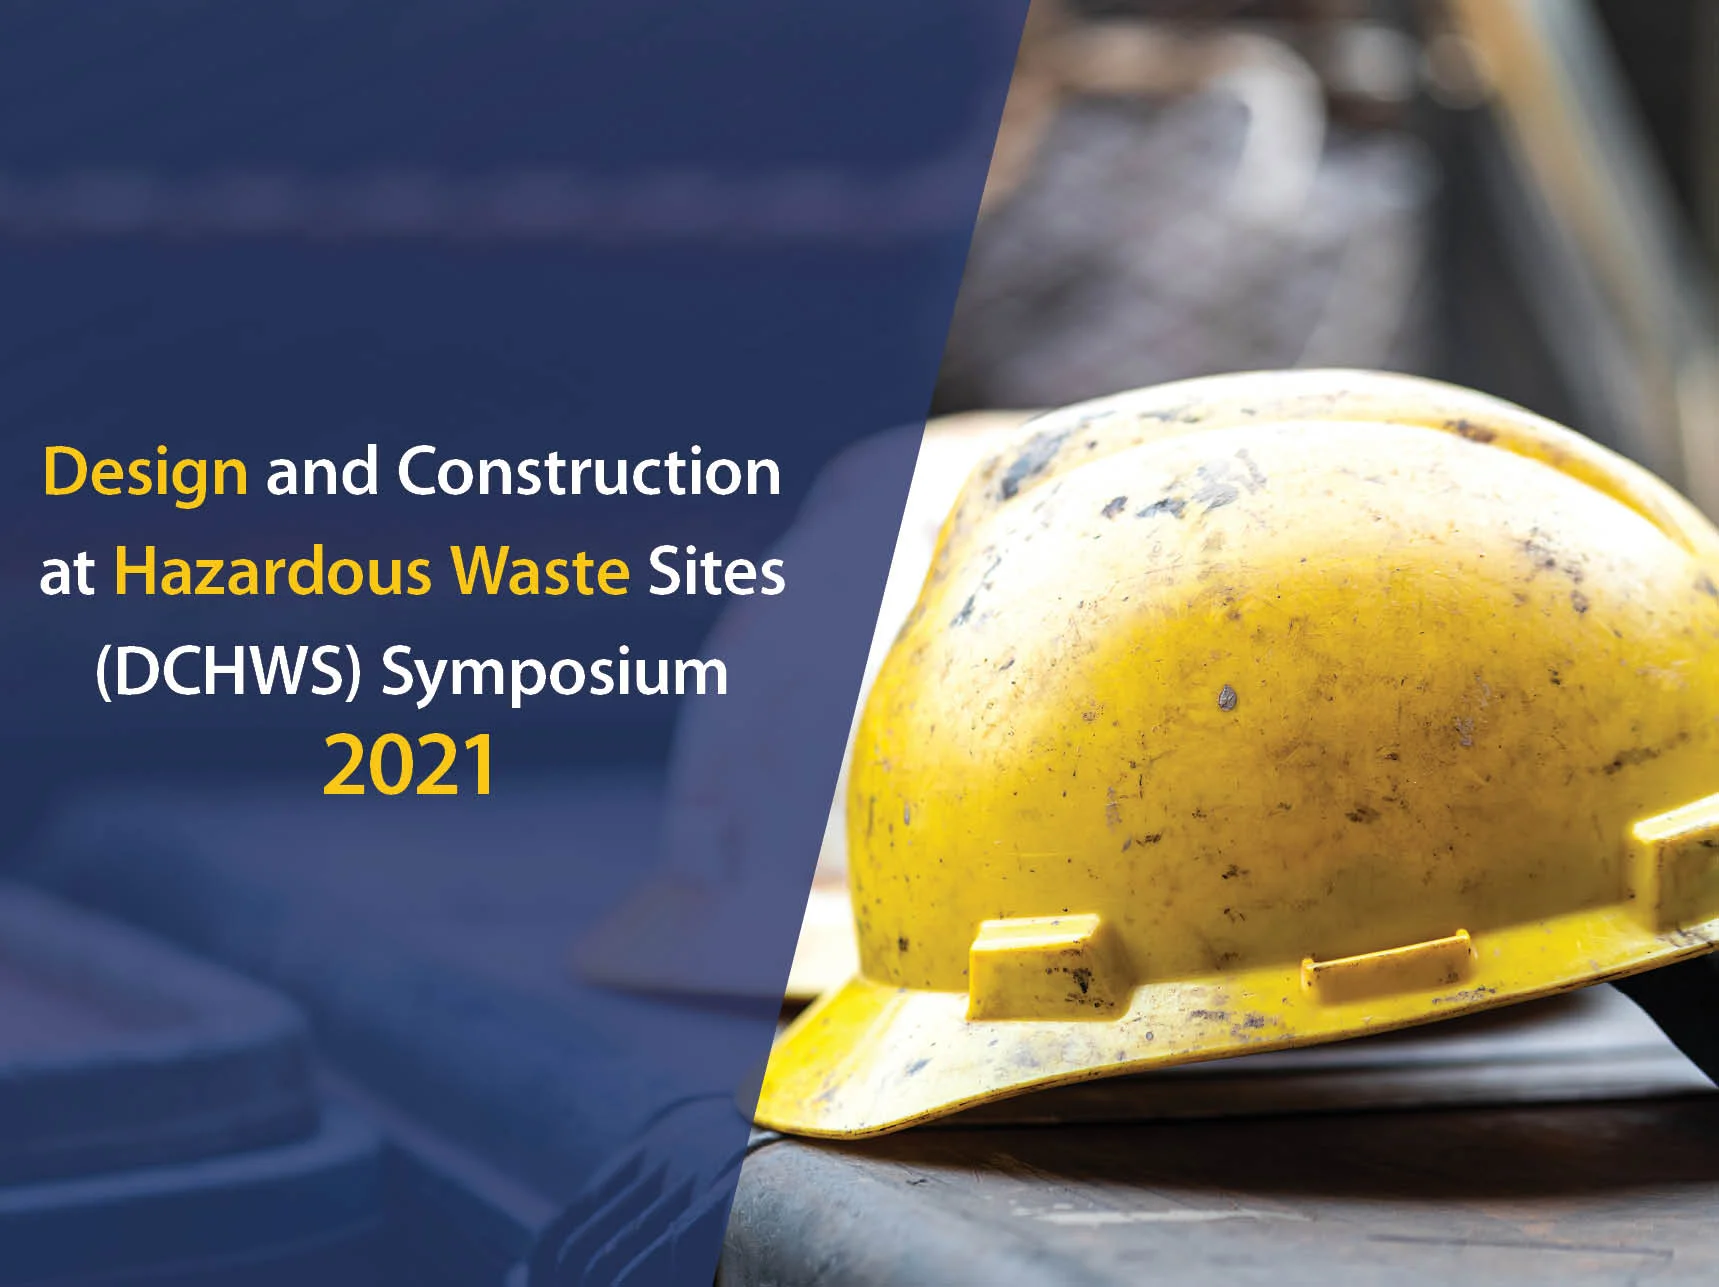 DCHWS Symposium 2021